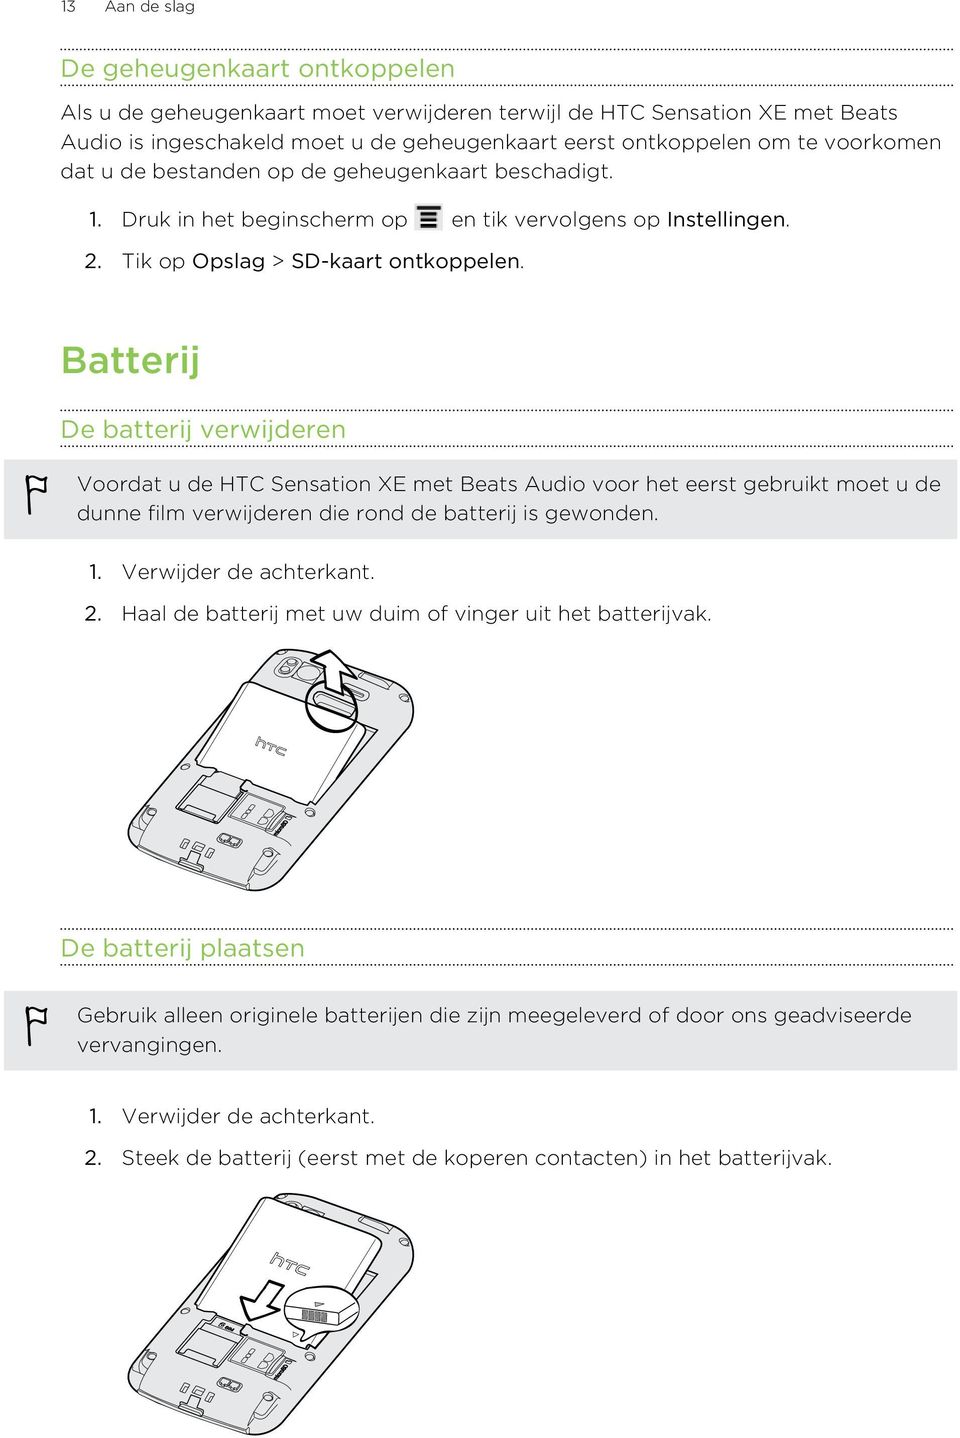 Batterij De batterij verwijderen Voordat u de HTC Sensation XE met Beats Audio voor het eerst gebruikt moet u de dunne film verwijderen die rond de batterij is gewonden. 1. Verwijder de achterkant. 2.